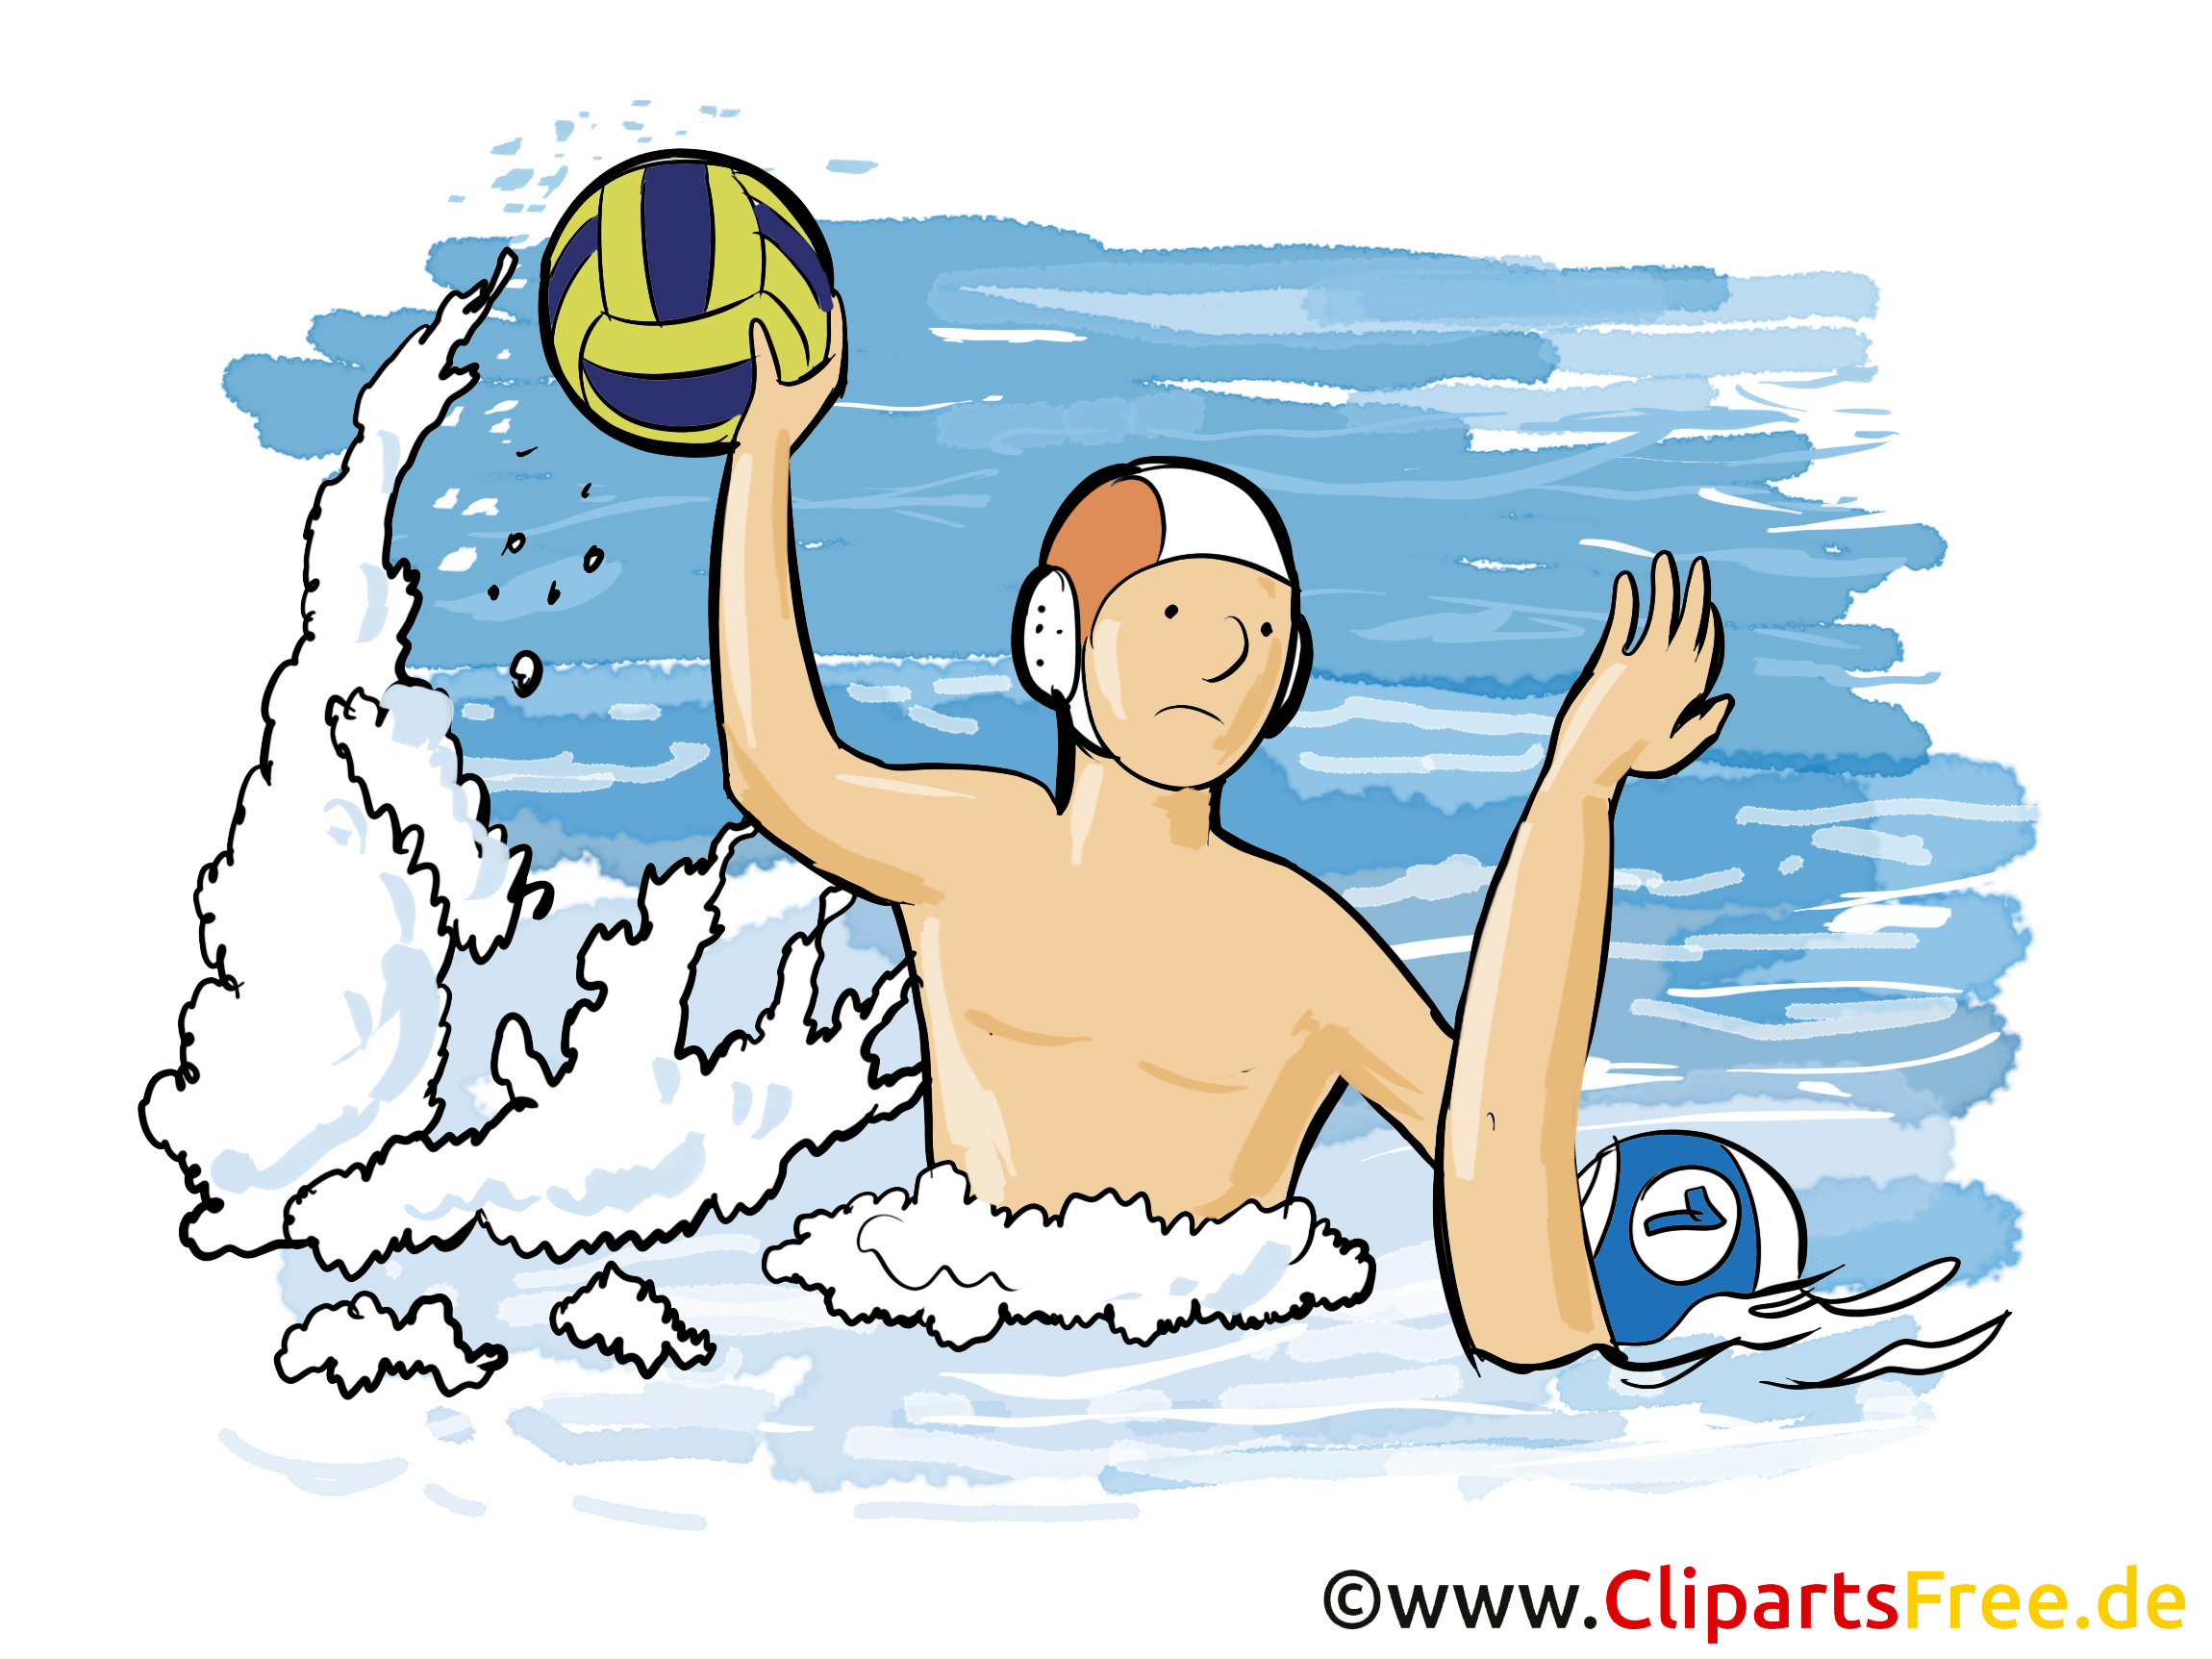 Water-polo image à télécharger - Sport clipart